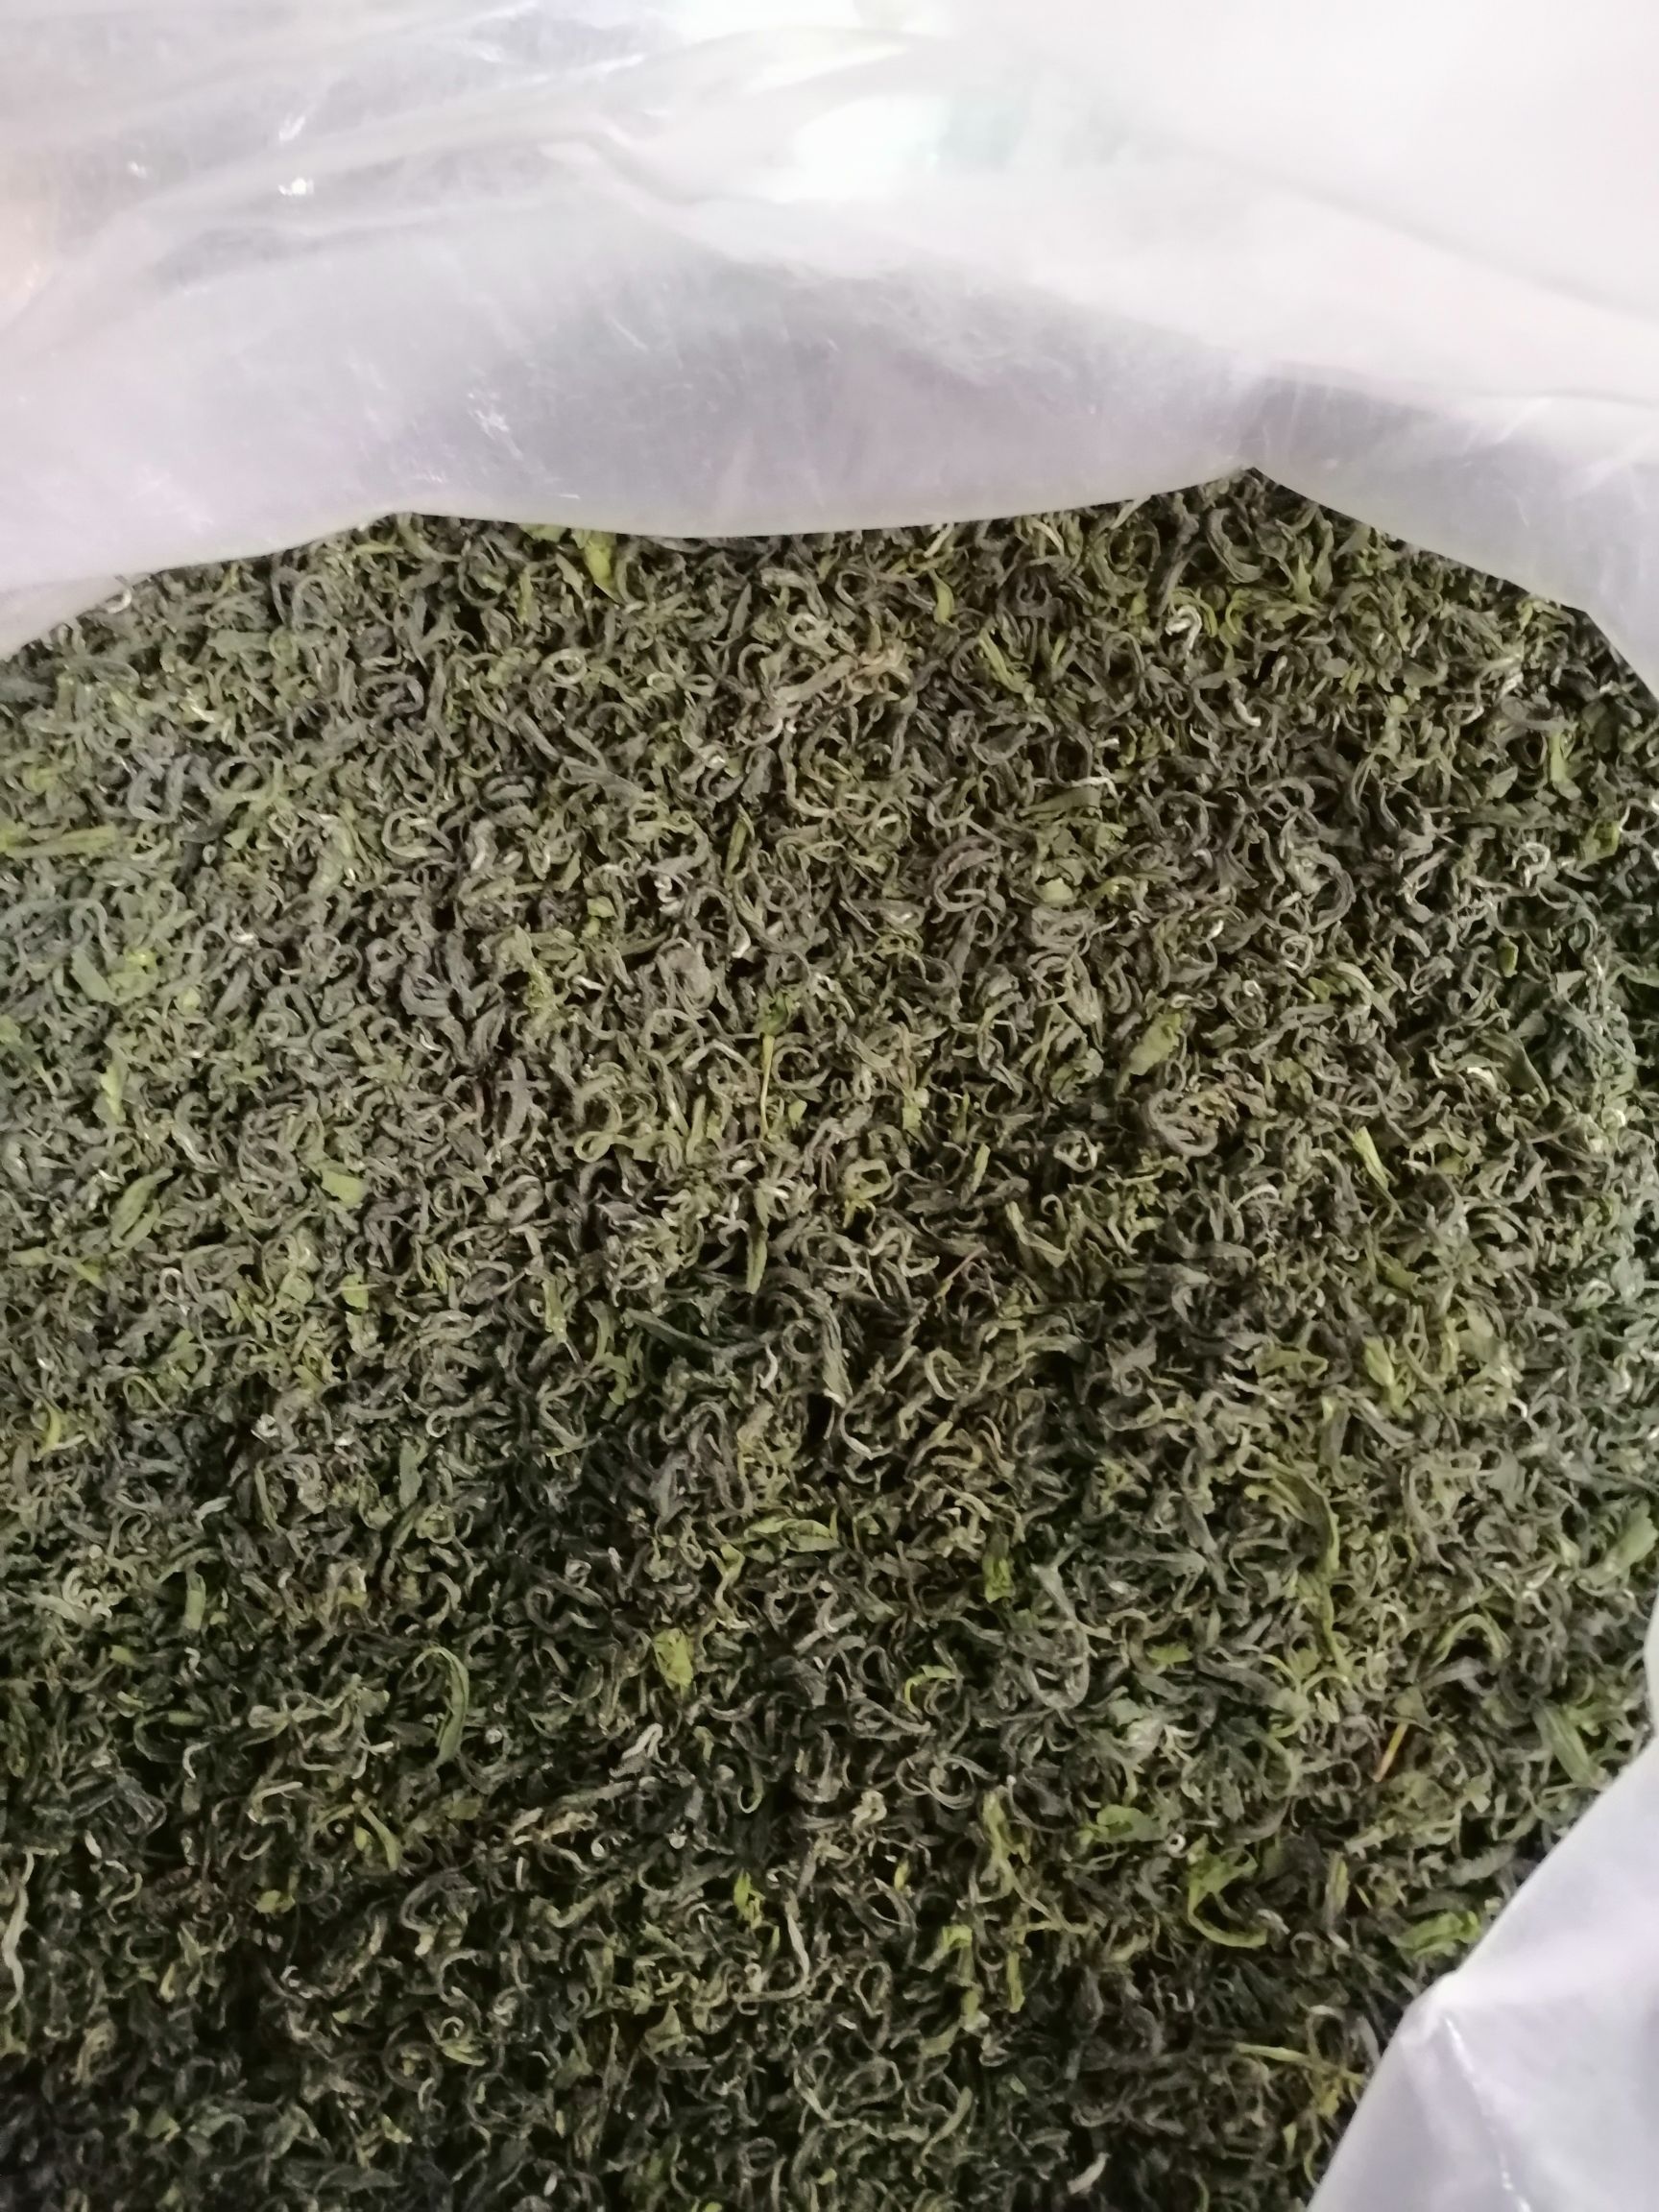 [狗牯脑茶批发] 2020高山绿茶口粮茶价格30元/斤